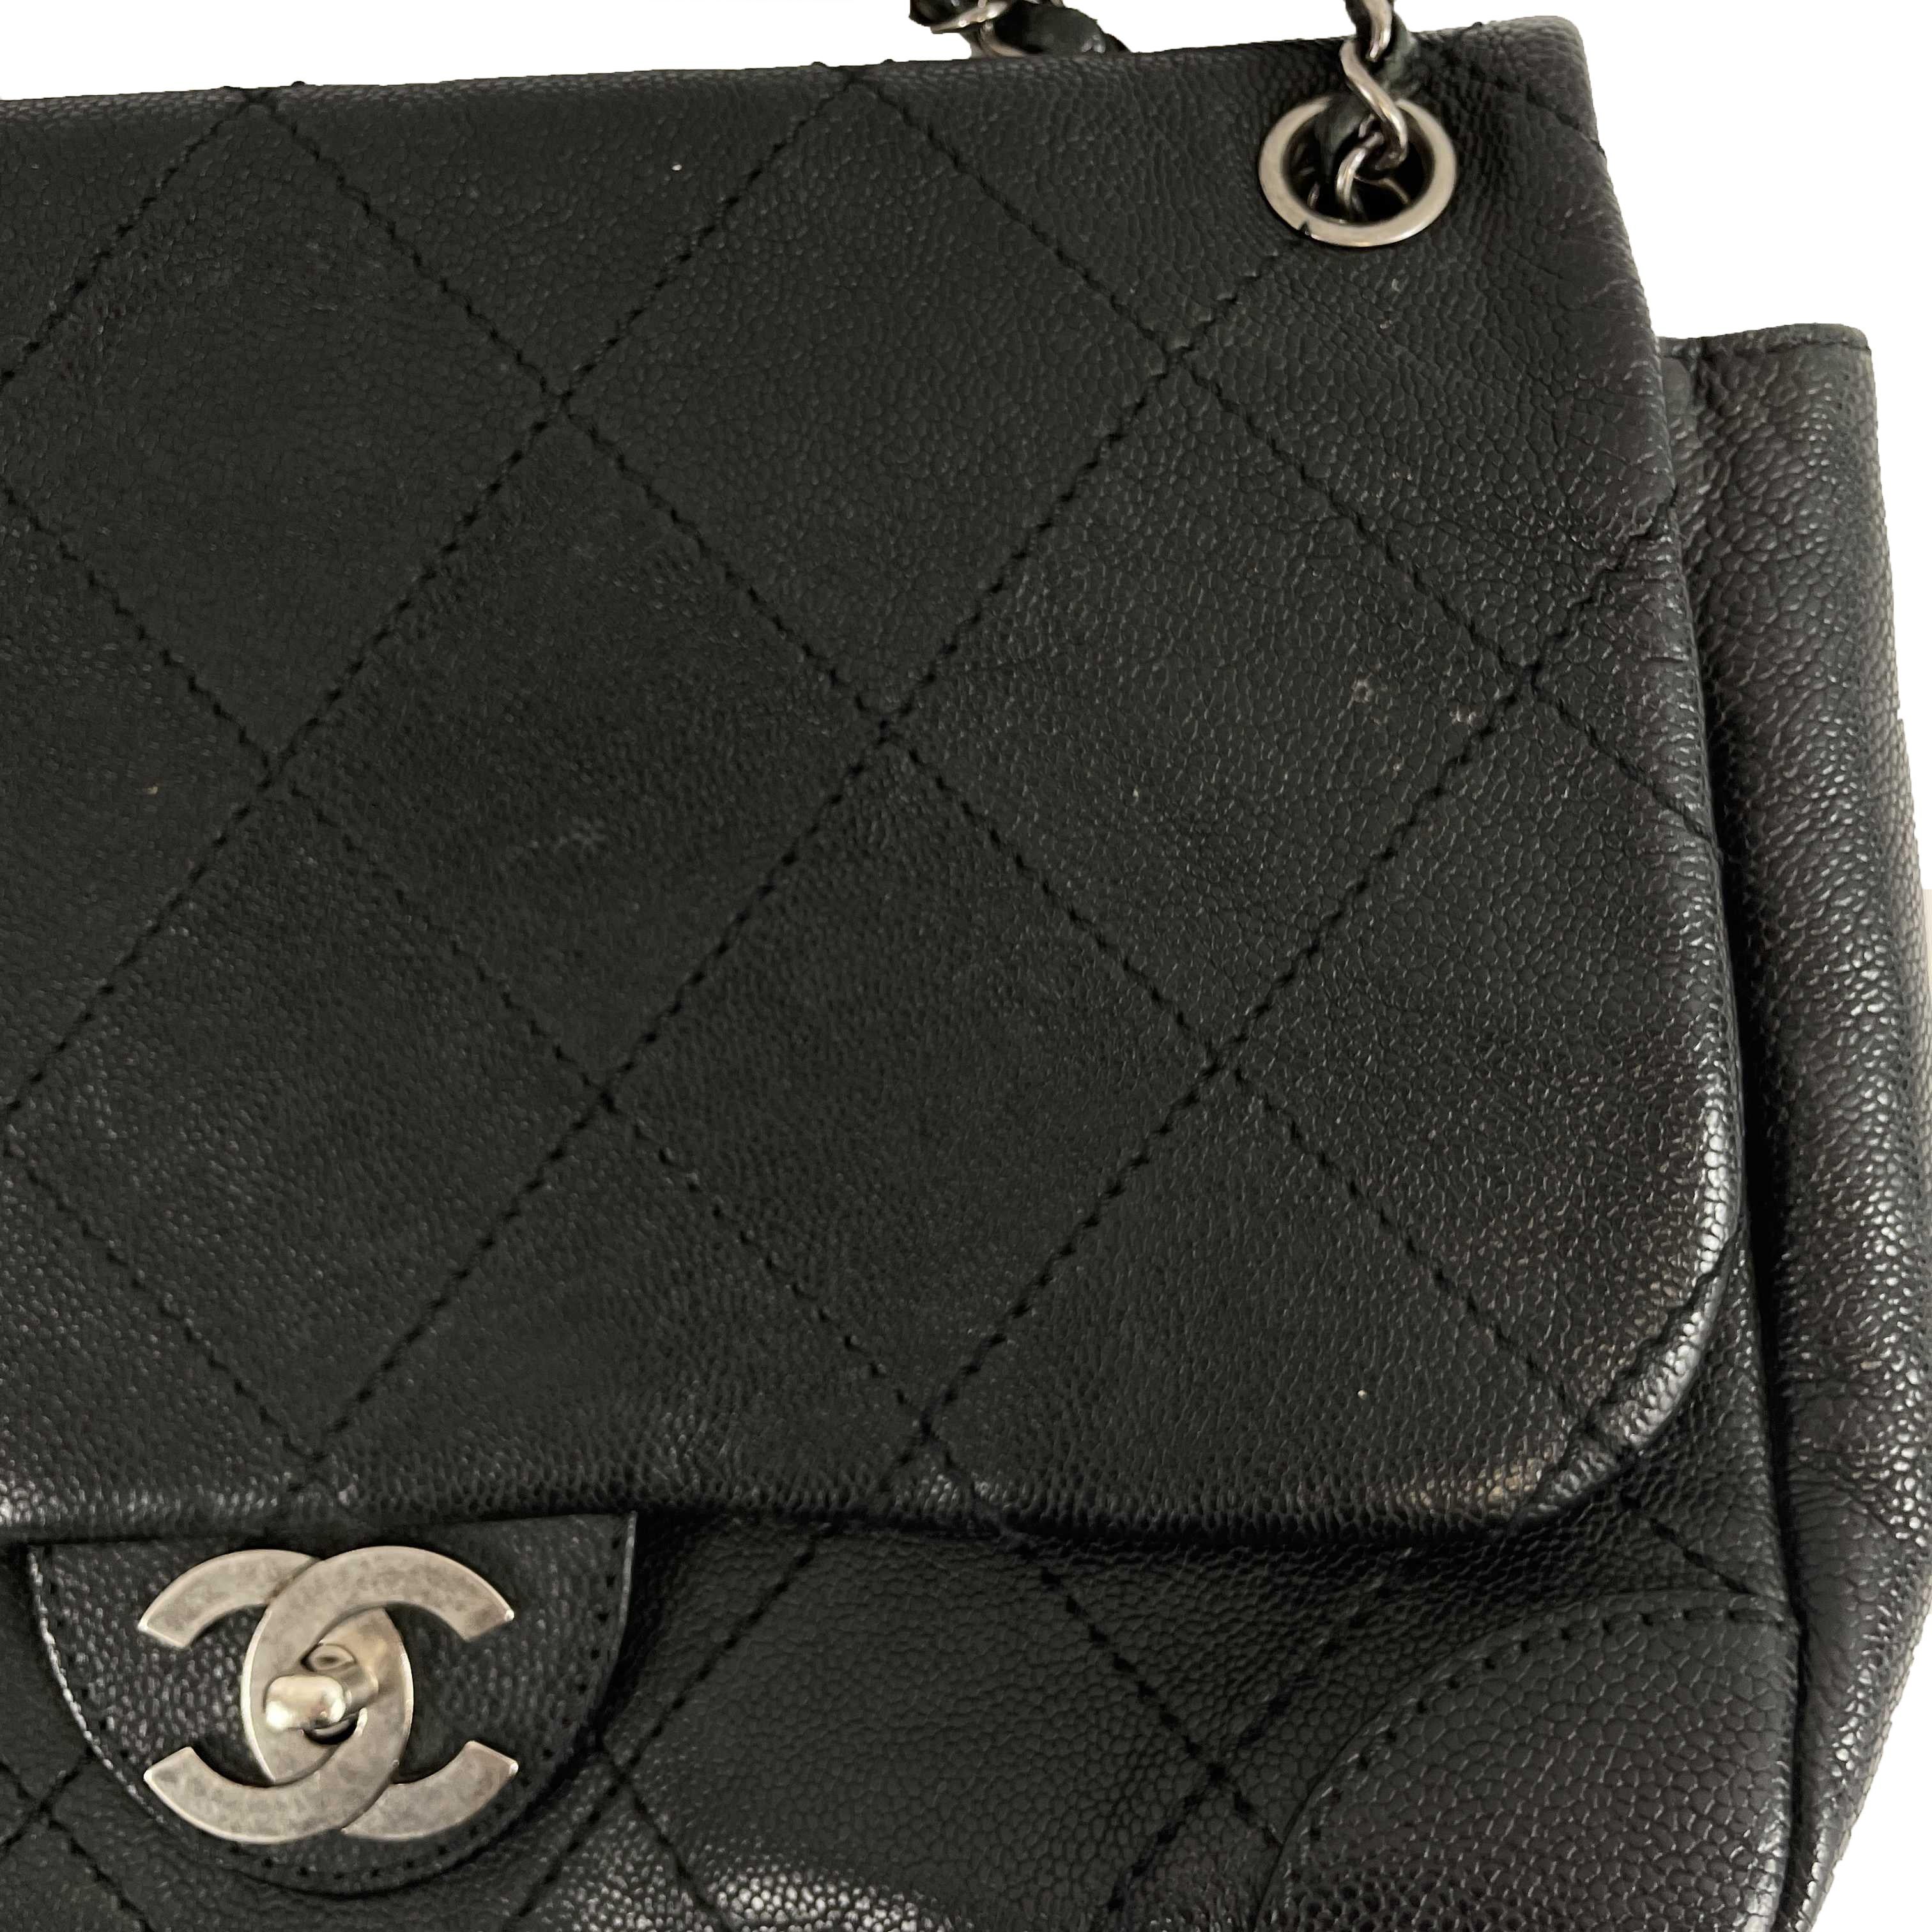 	CHANEL - CC Ligne Flap Large Bag Black / Silver Caviar Leather Shoulder Bag 10